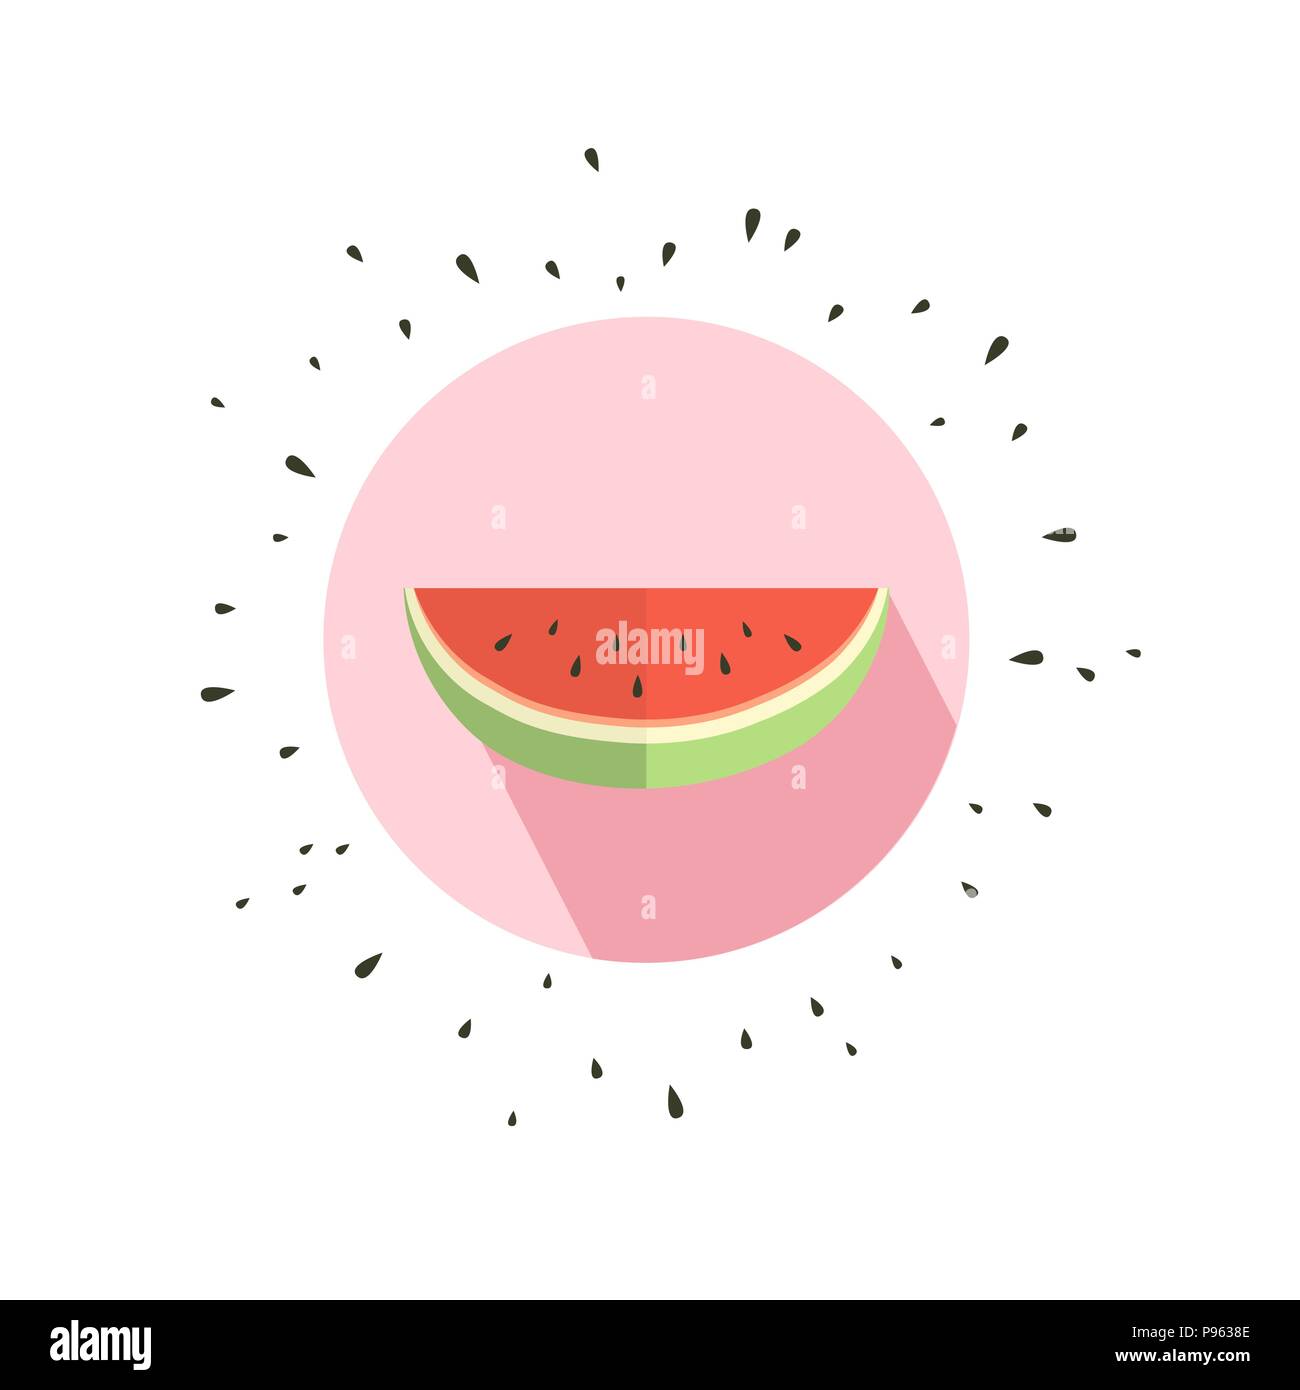 Illustrazione Vettoriale di anguria. Ciao summer card con melone Illustrazione Vettoriale